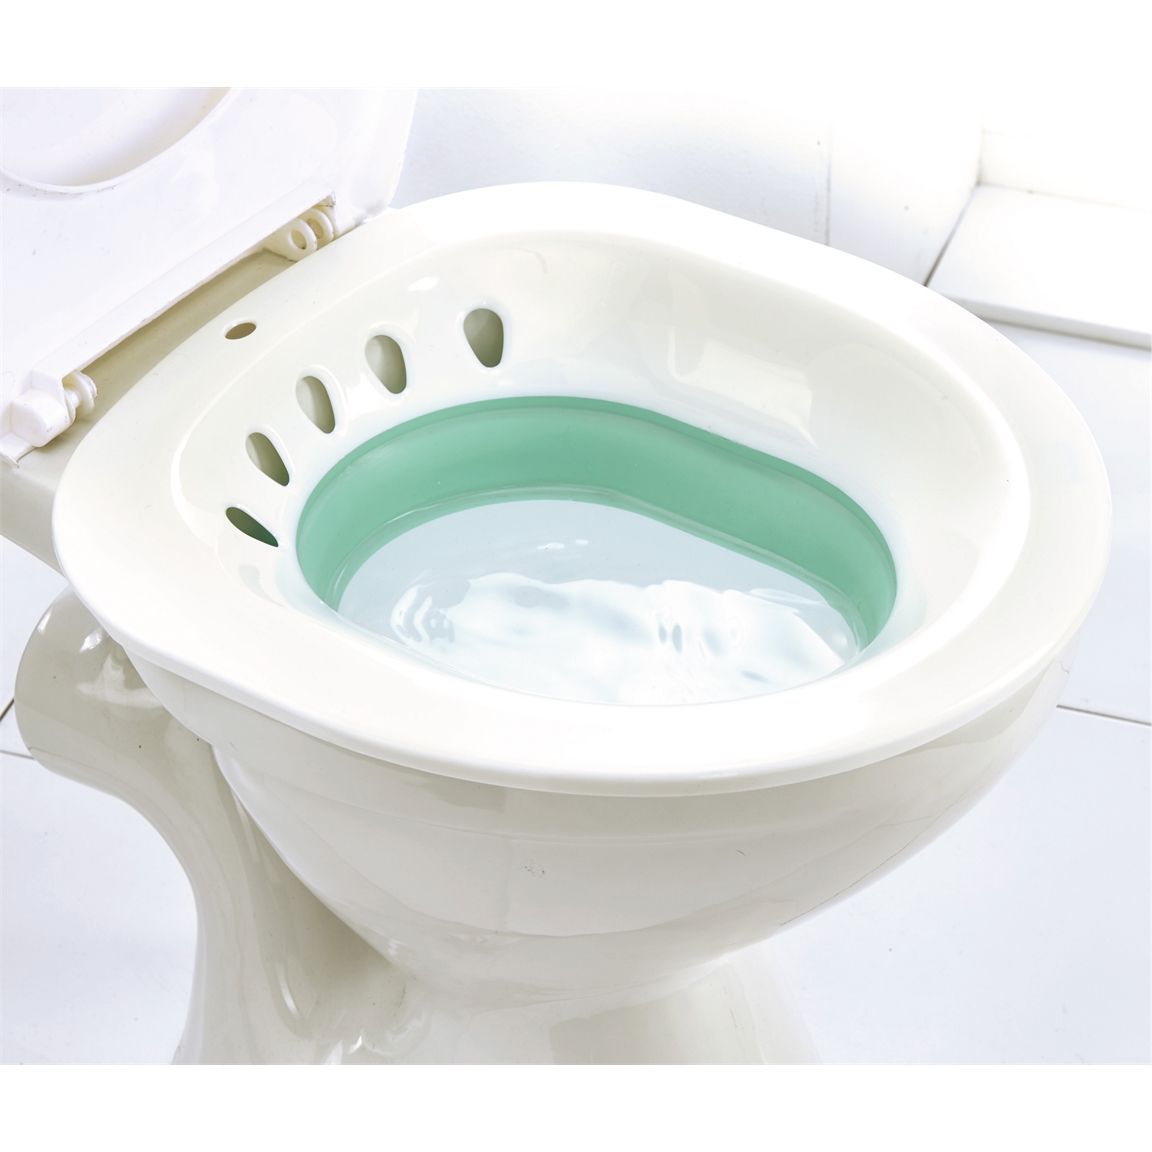 Le wc bidet intégré assure la toilette intime sur la cuvette du wc